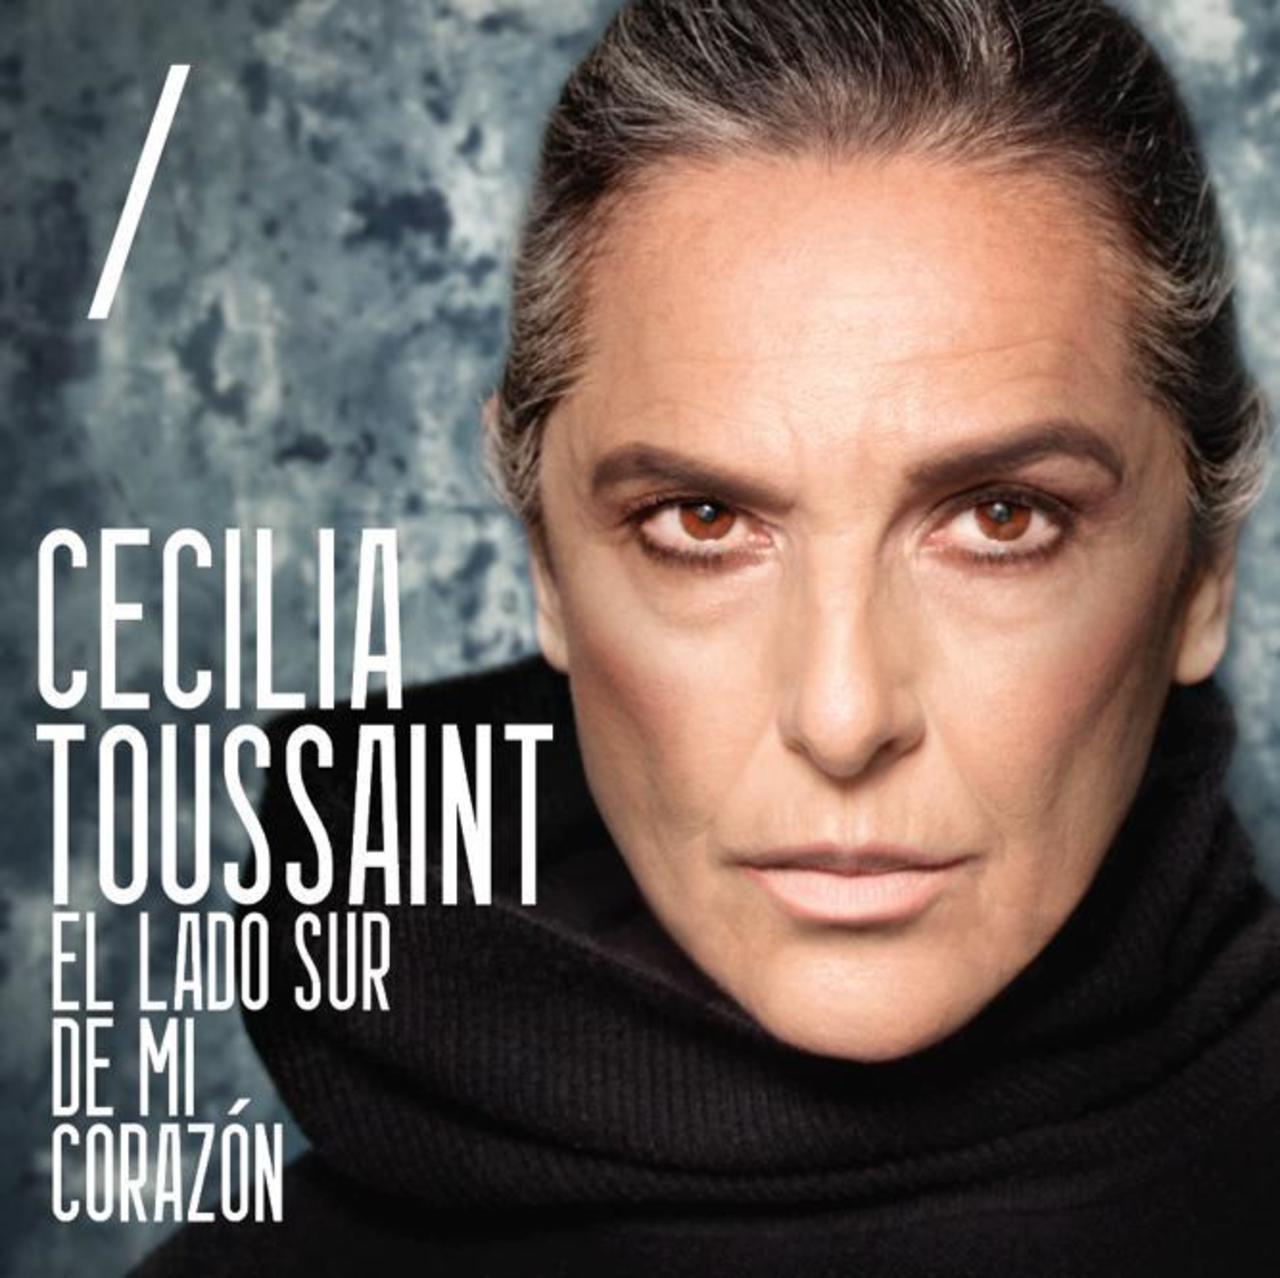 Cecilia Toussaint se presentará como invitada especial en la edición 22 del Festival Iberoamericano de Cultura Musical, Vive Latino (ESPECIAL)